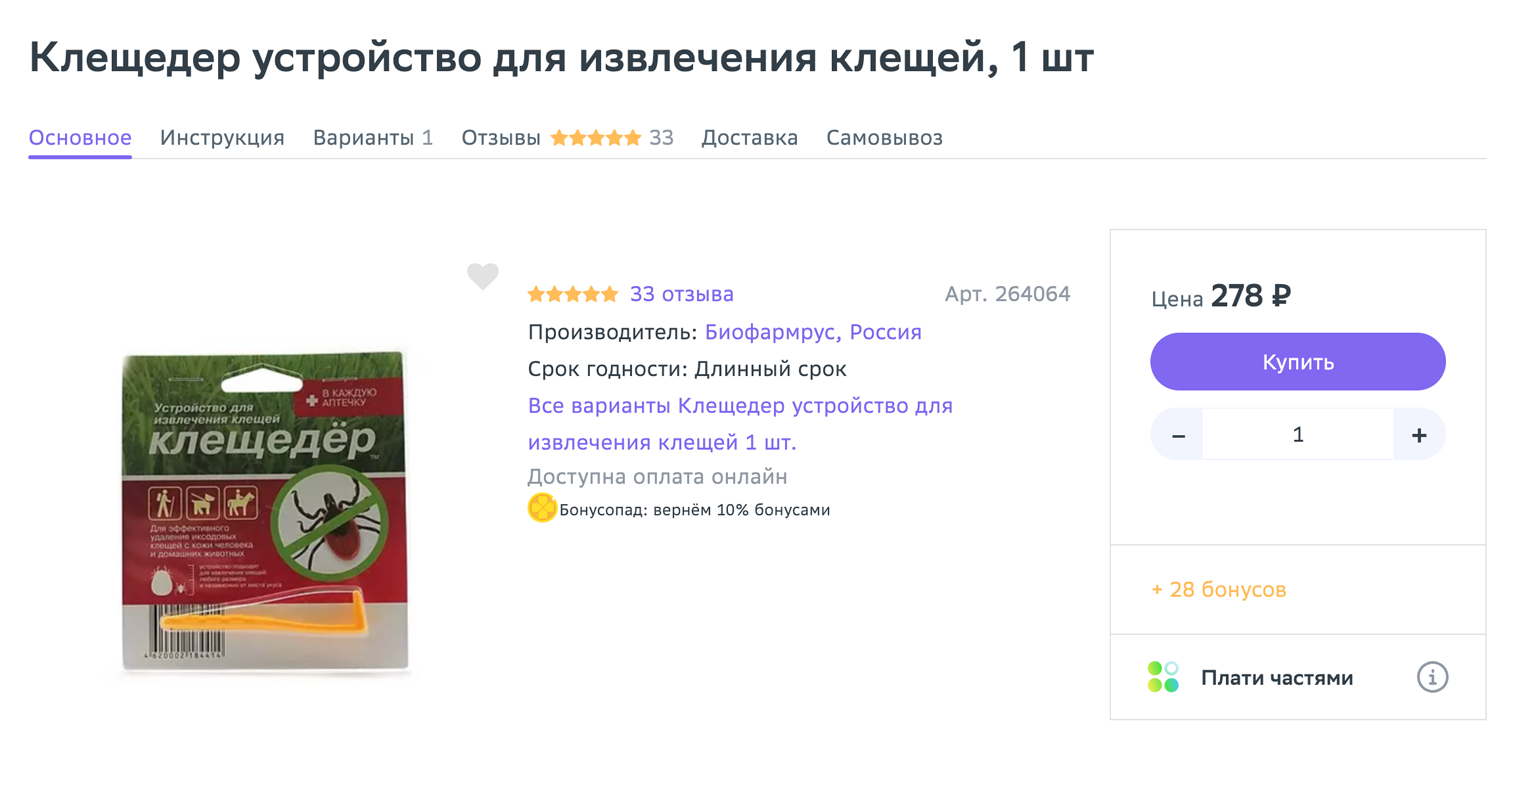 Специальный инструмент для извлечения клещей можно купить в аптеке или на маркетплейсе. Источник: eapteka.ru